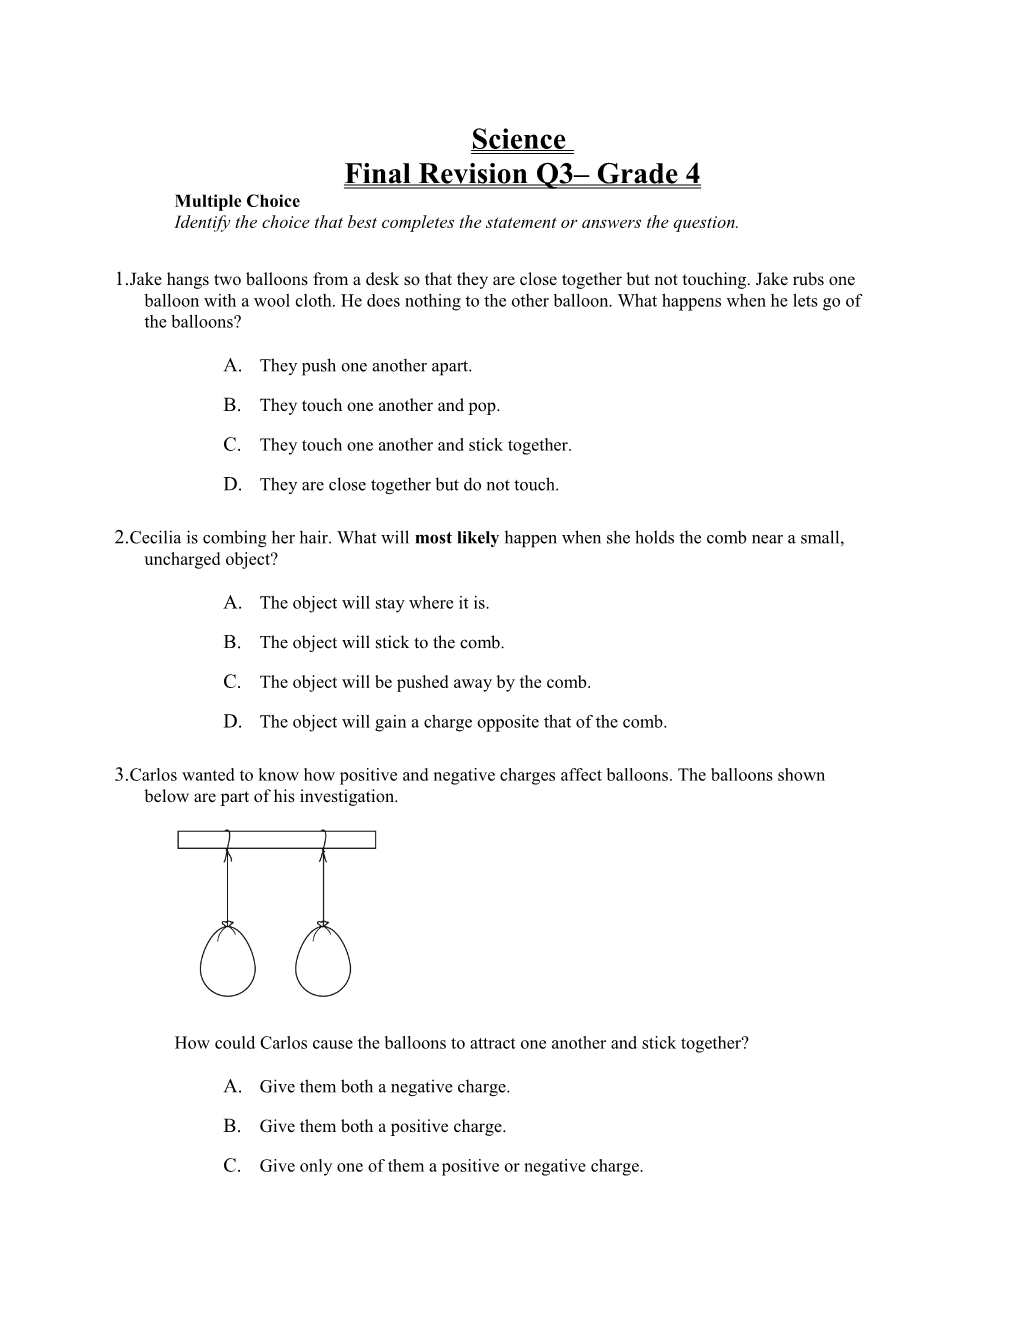 Final Revision Q3 Grade 4